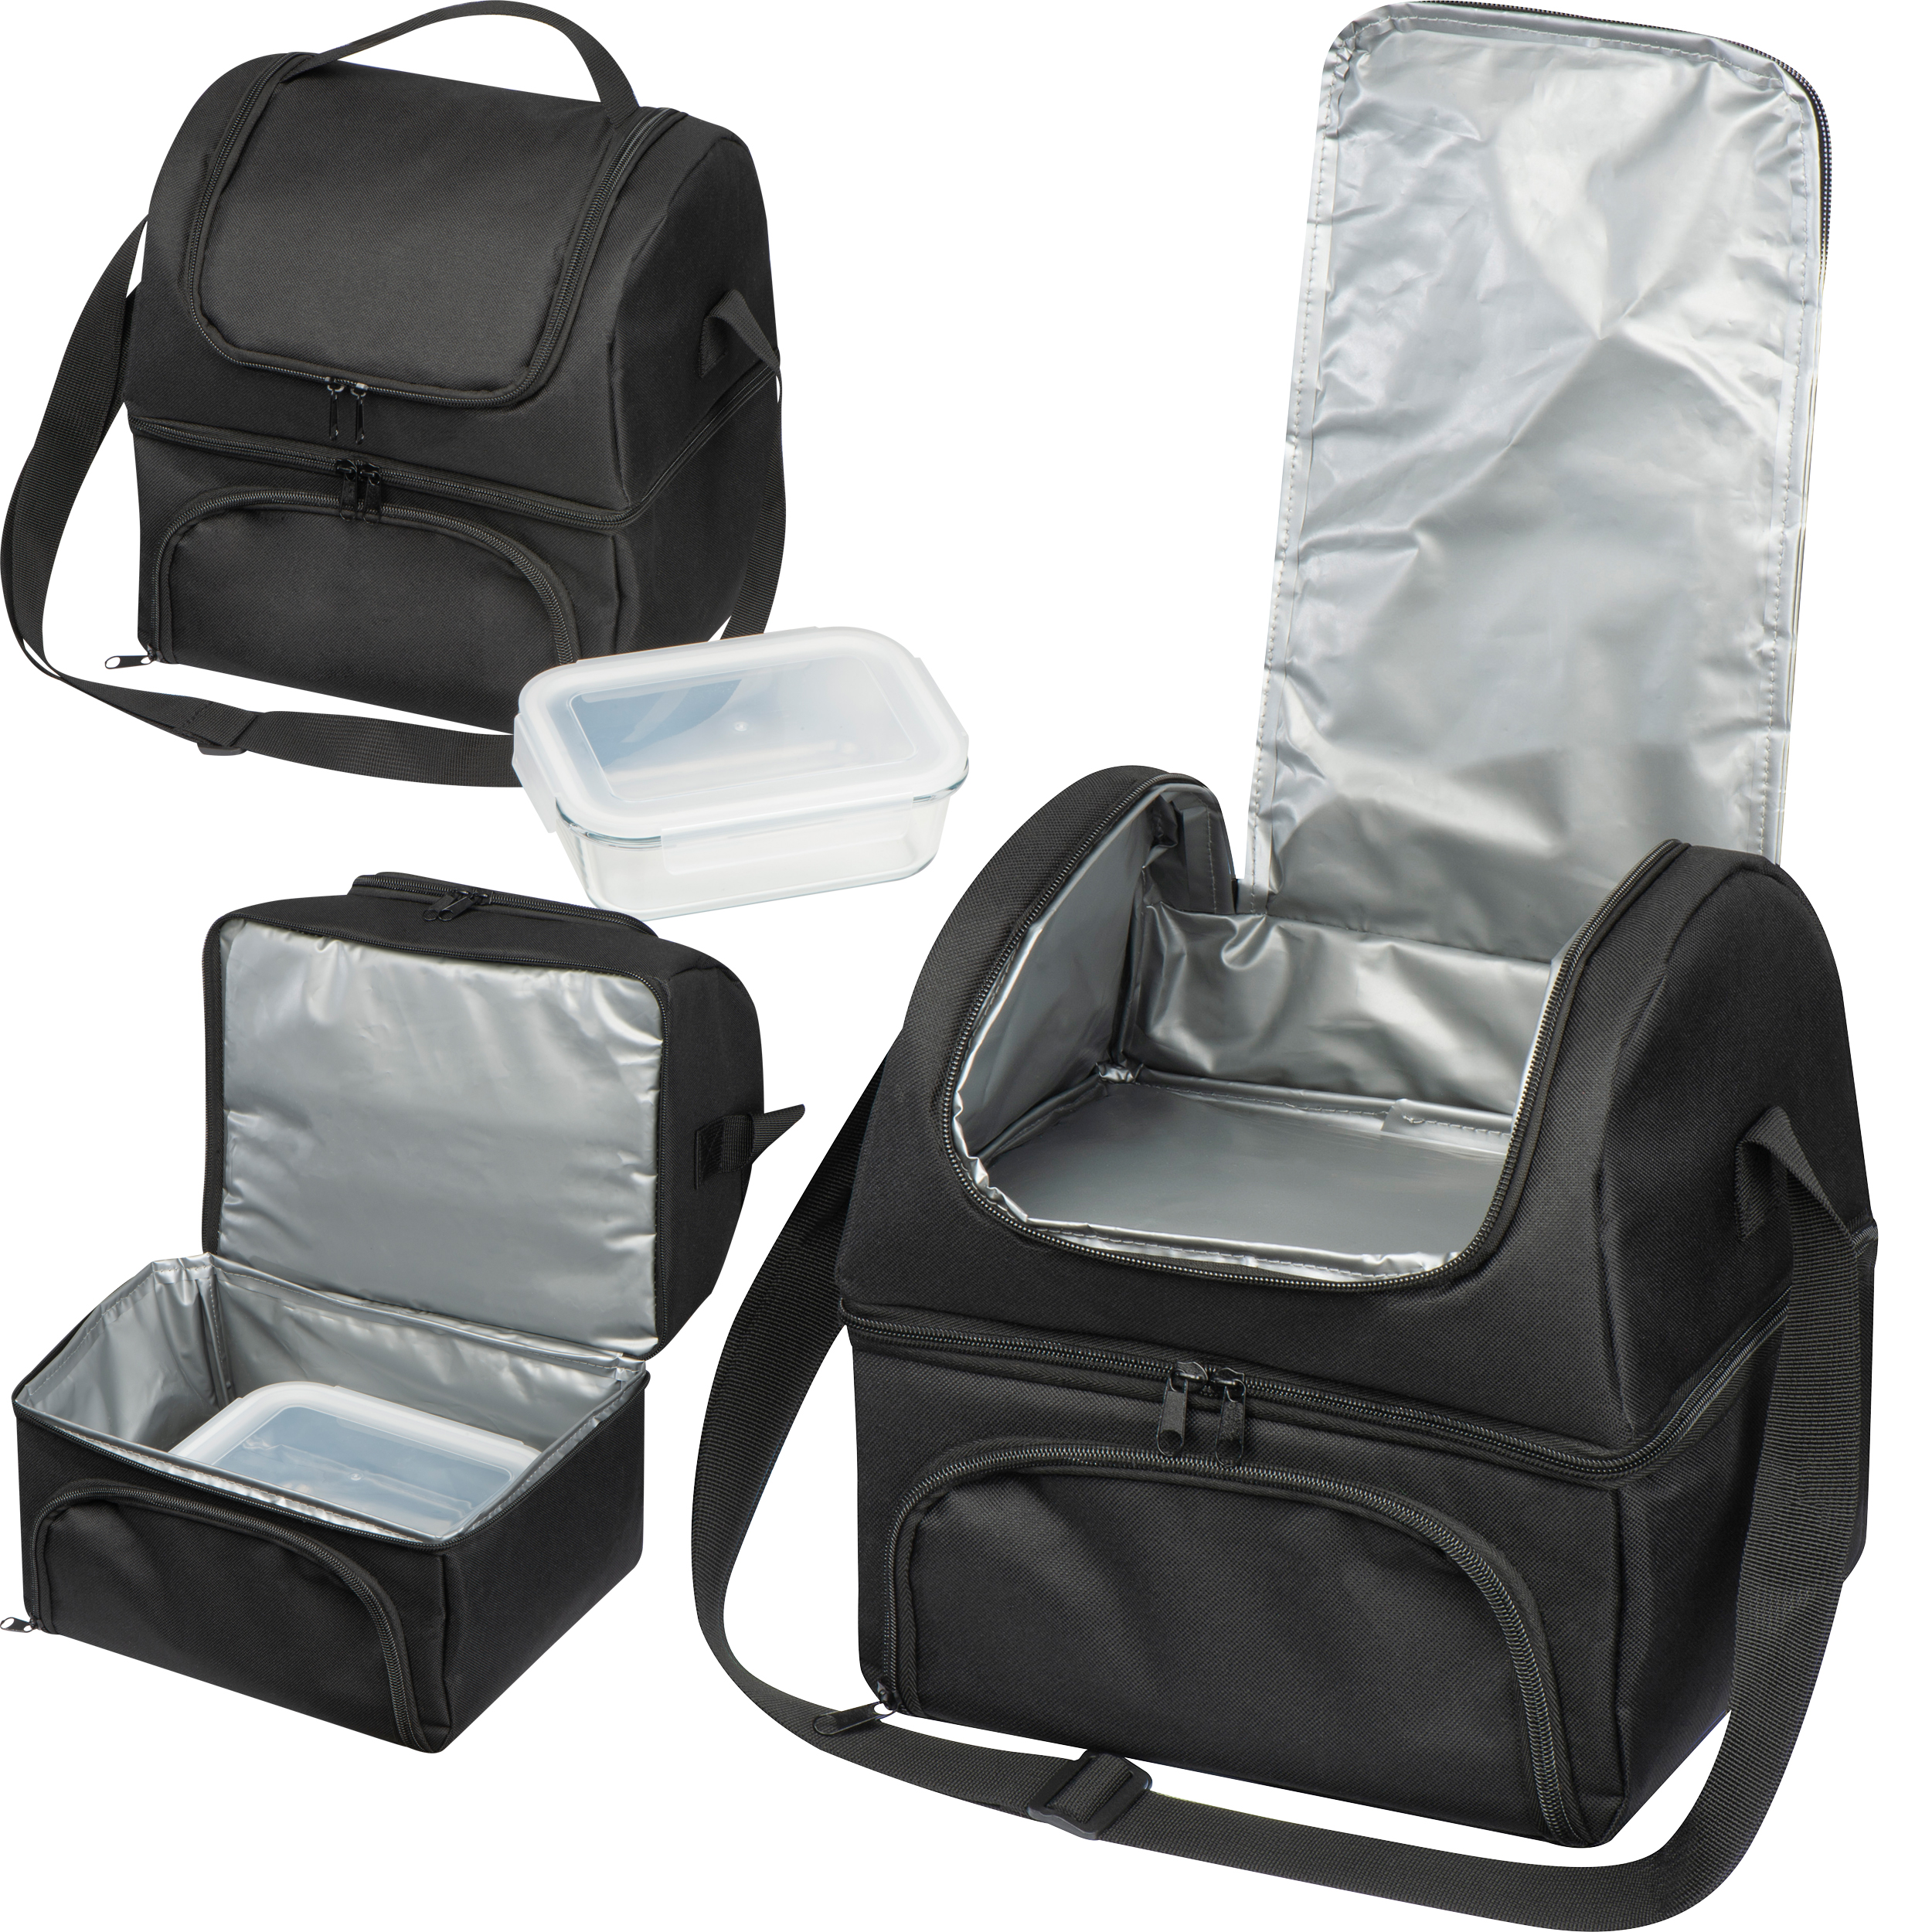 Bolsa nevera con 2 compartimentos - incluye un recipiente de cristal para alimentos